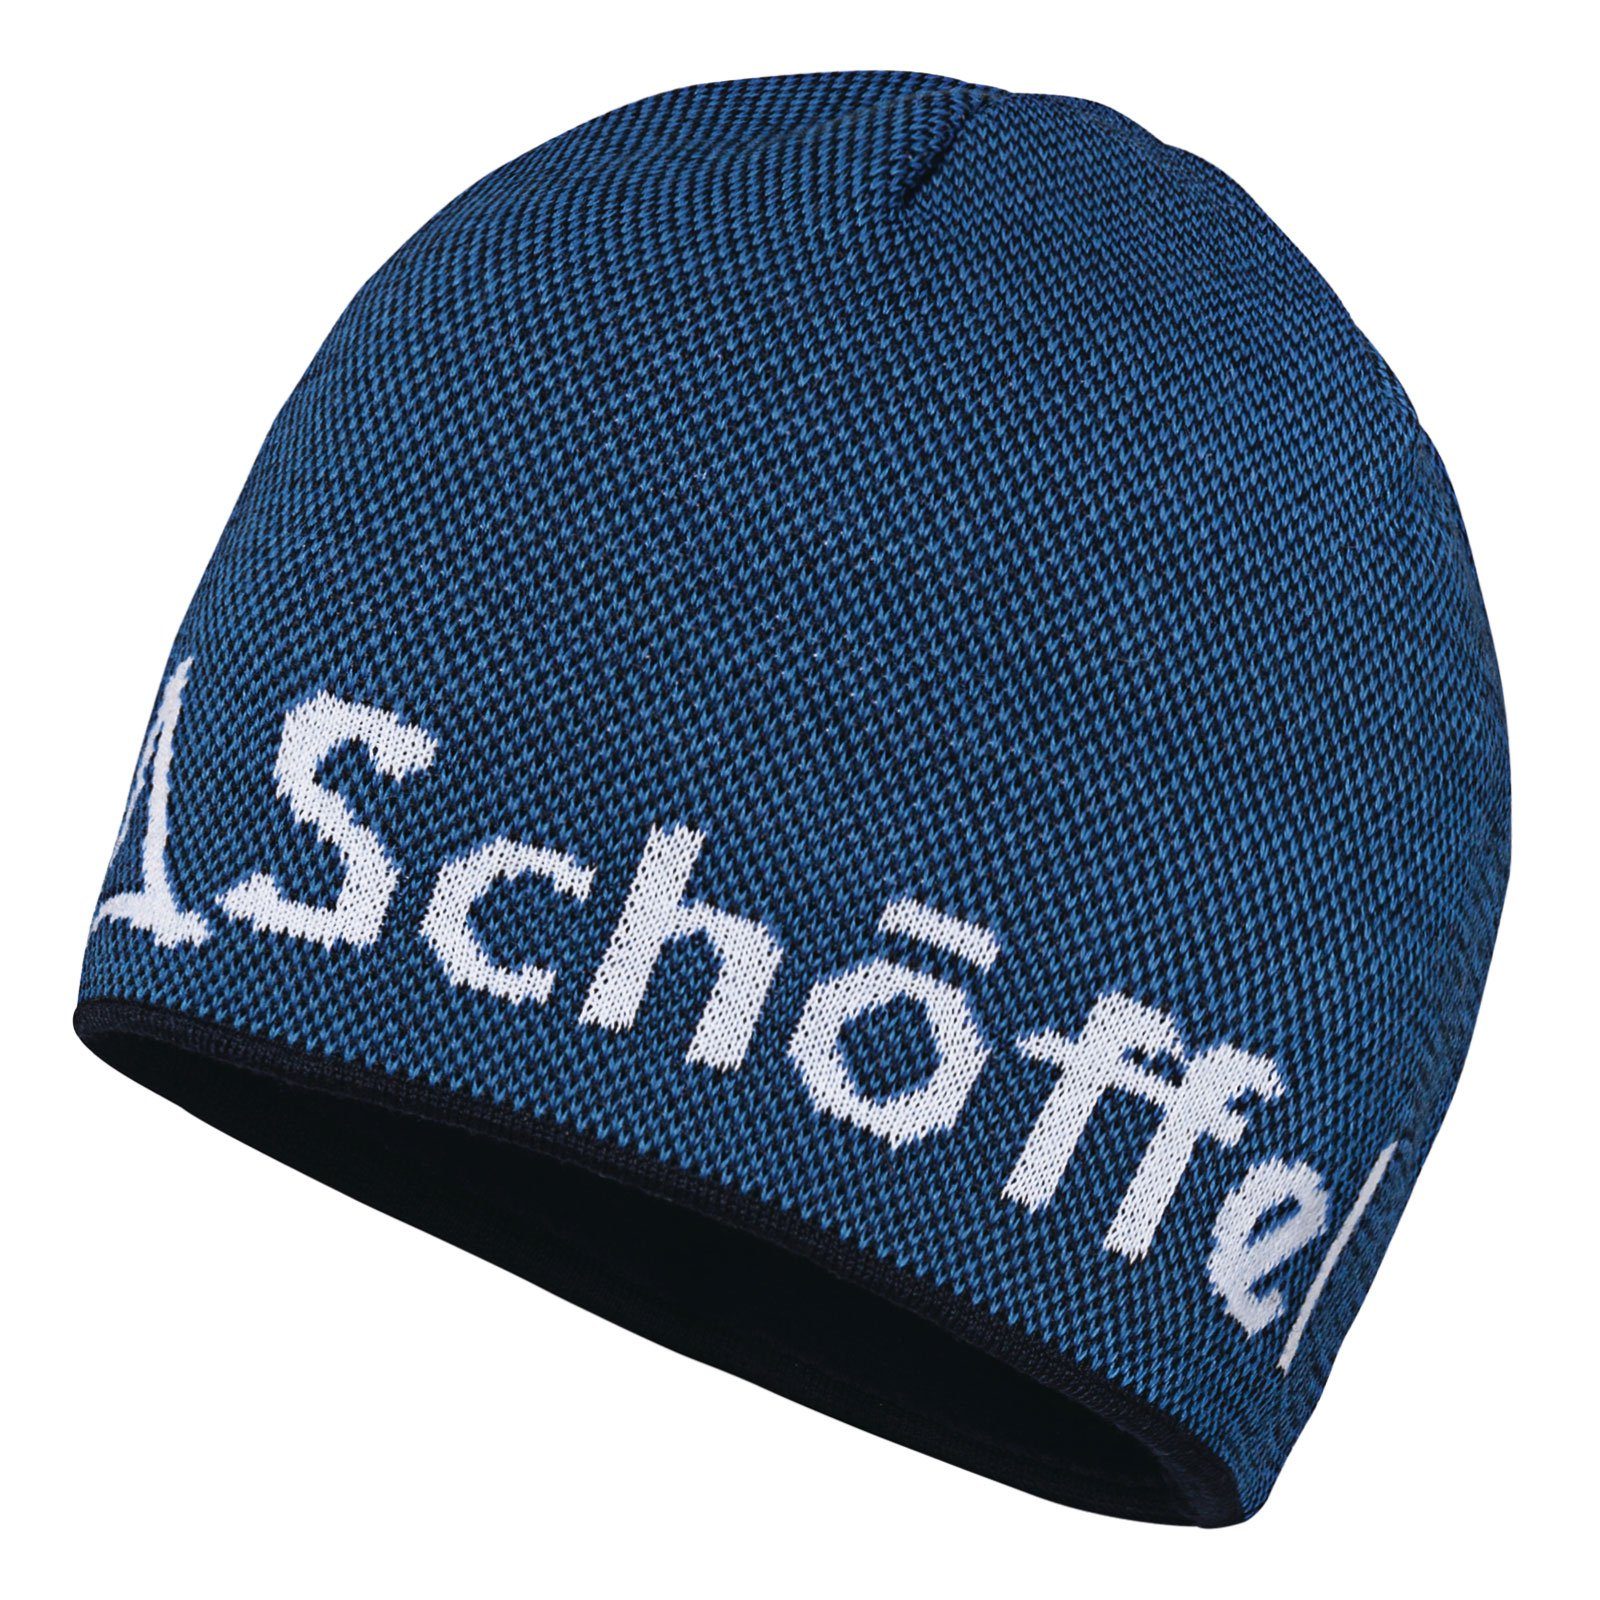 Hat Schöffel-Logo Schöffel mit Schoeffel eingestricktem Strickmütze blue 8320 Klinovec directoire Knitted